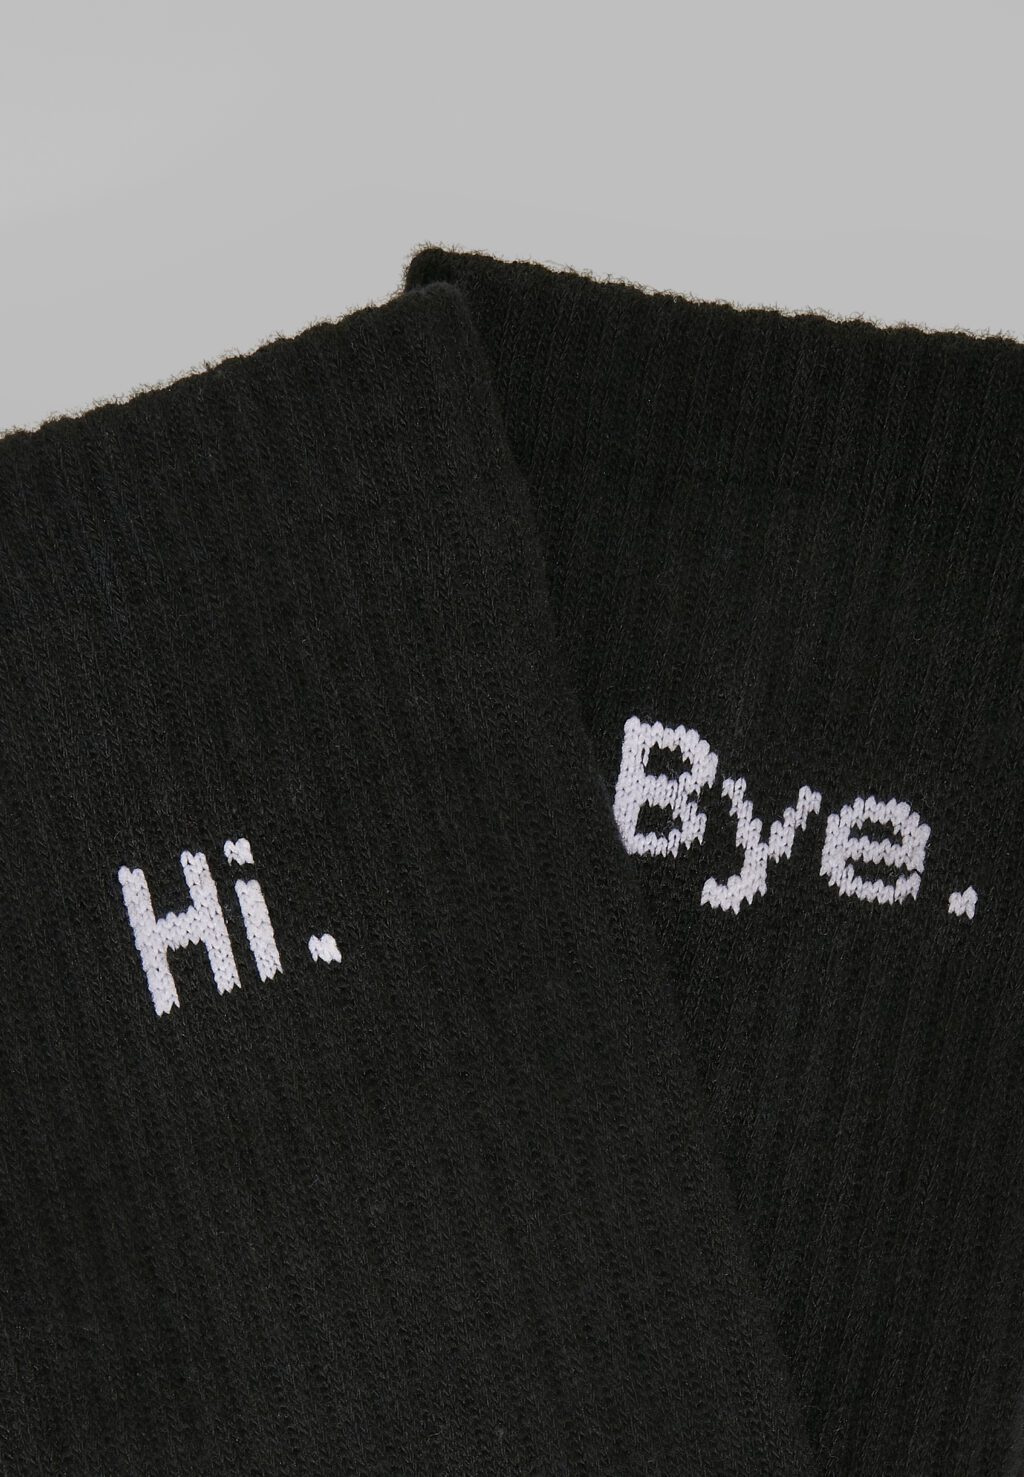 HI - Bye Socks short 2-Pack black/white MT2044